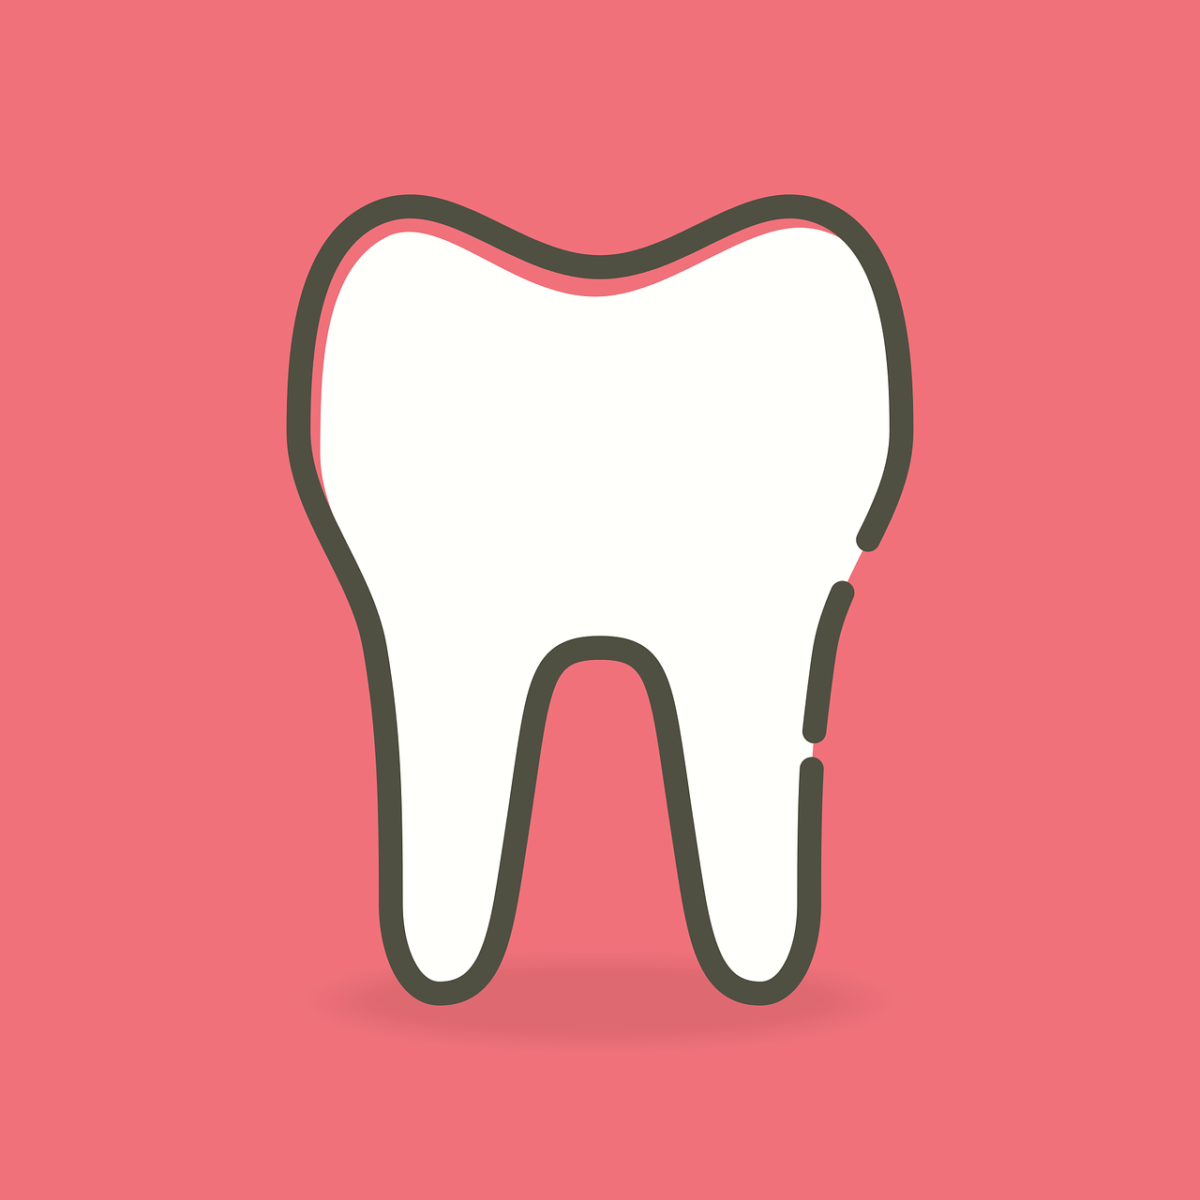 Ładne nienaganne zęby również doskonały prześliczny uśmieszek to powód do zadowolenia.